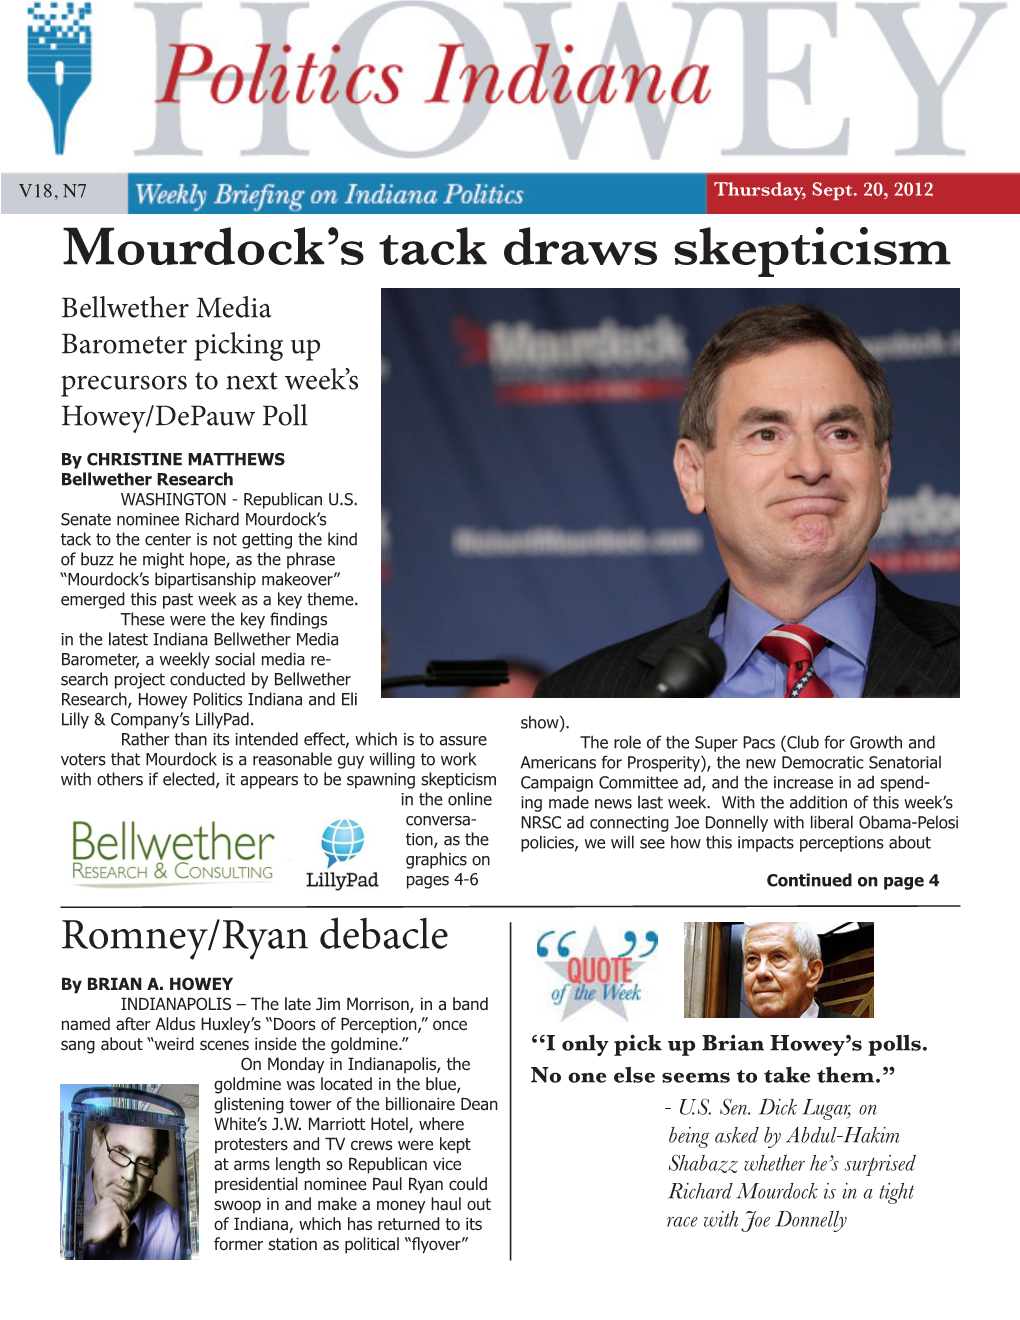 Mourdock's Tack Draws Skepticism